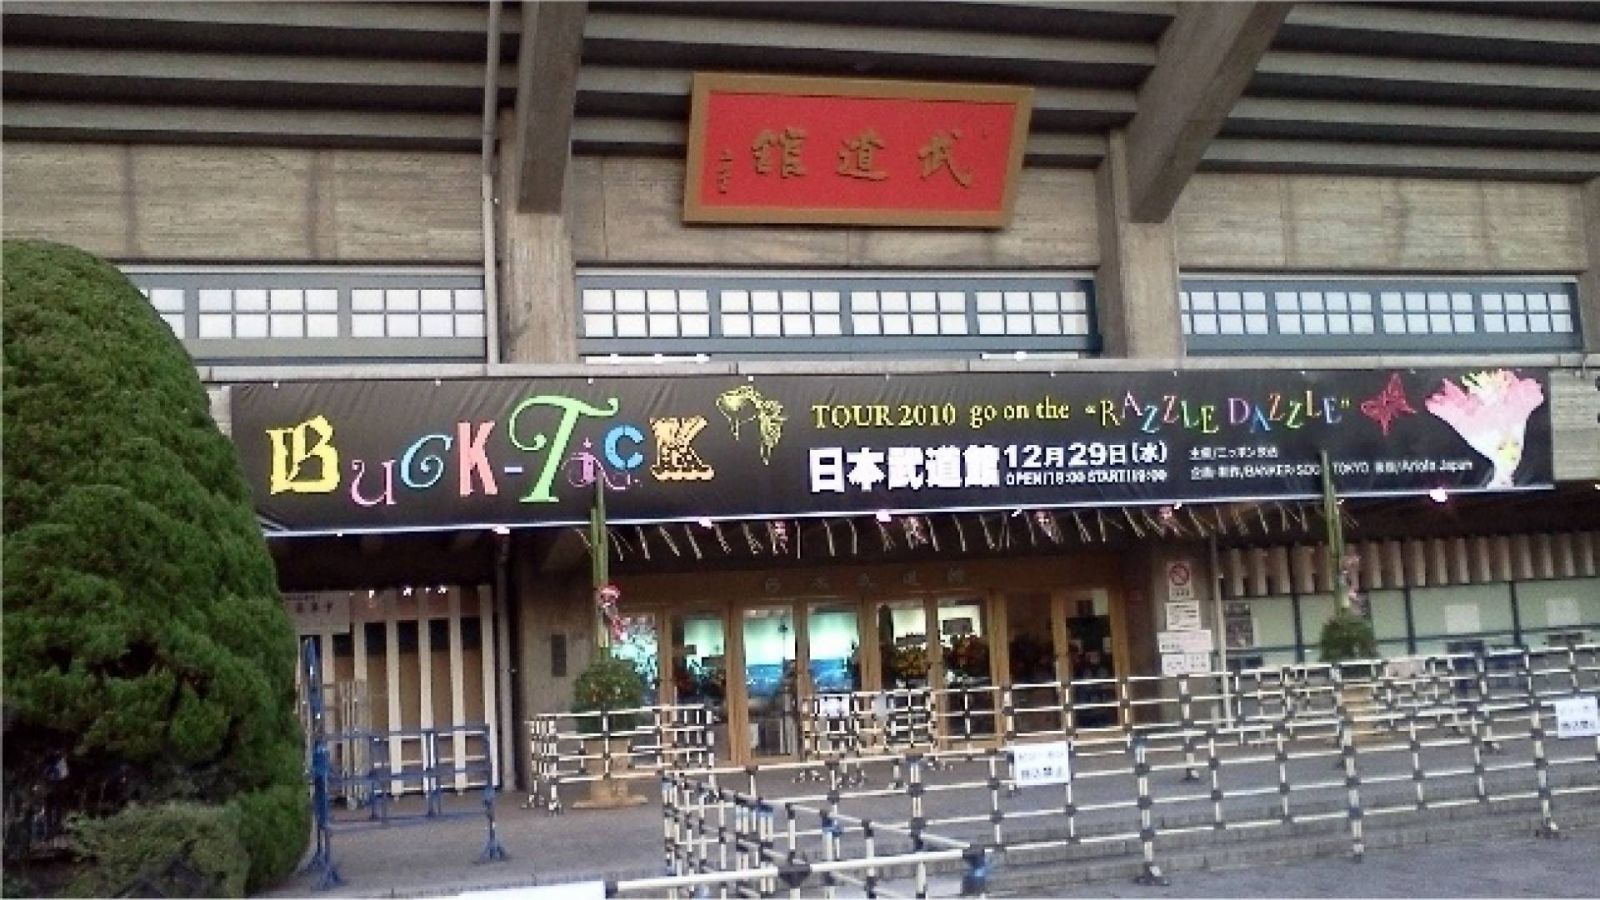 BUCK-TICK - finał trasy go on the "RAZZLE DAZZLE" w Nippon Budokan © JaME - Agnieszka Trojanowska